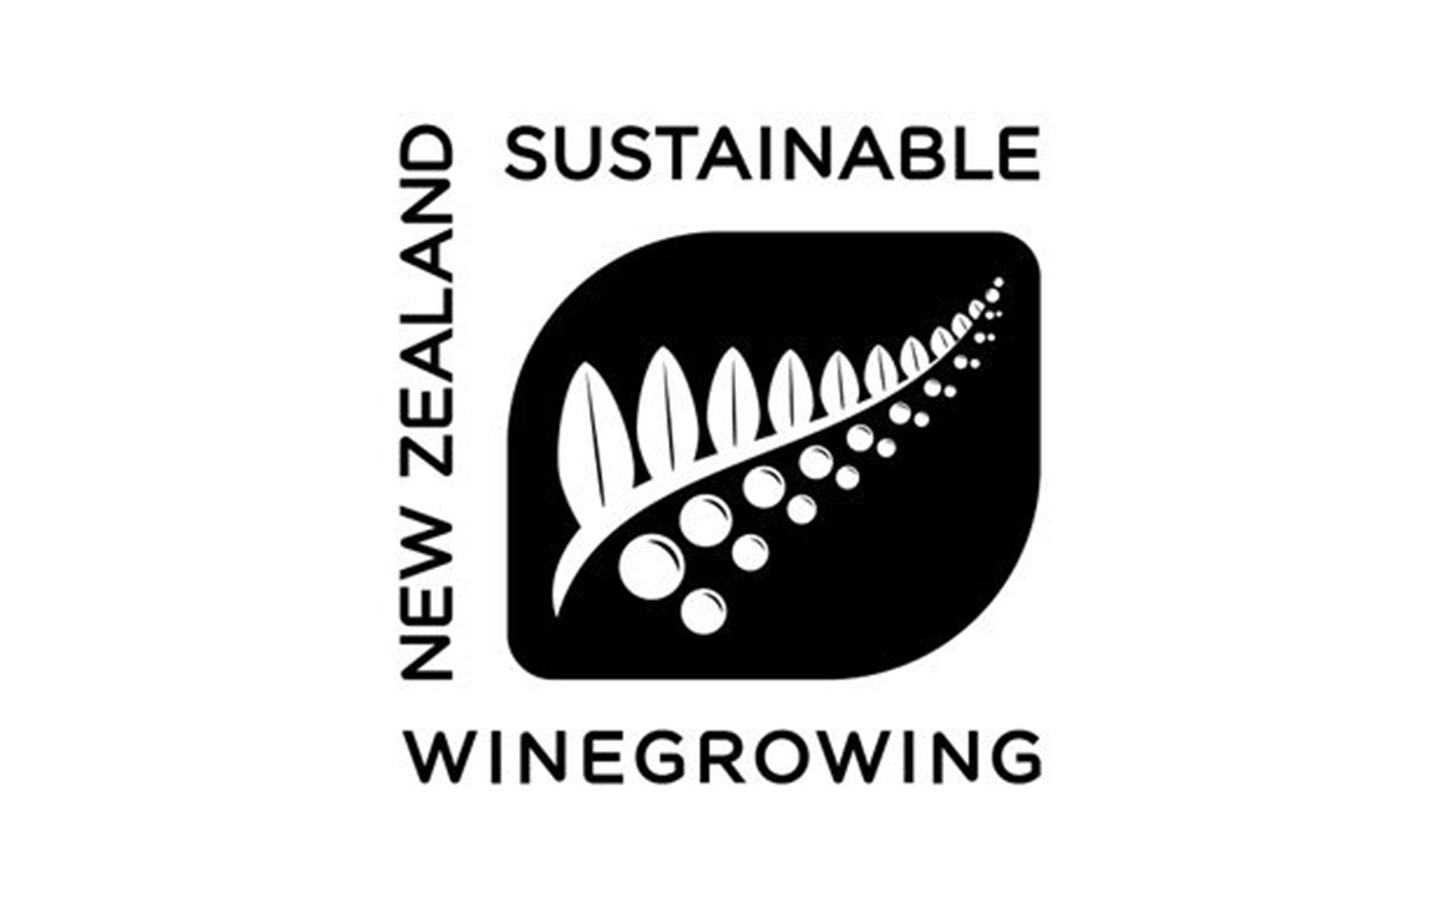 Label de la viticulture durable en Nouvelle-Zélande. Sustainable Wine Growing